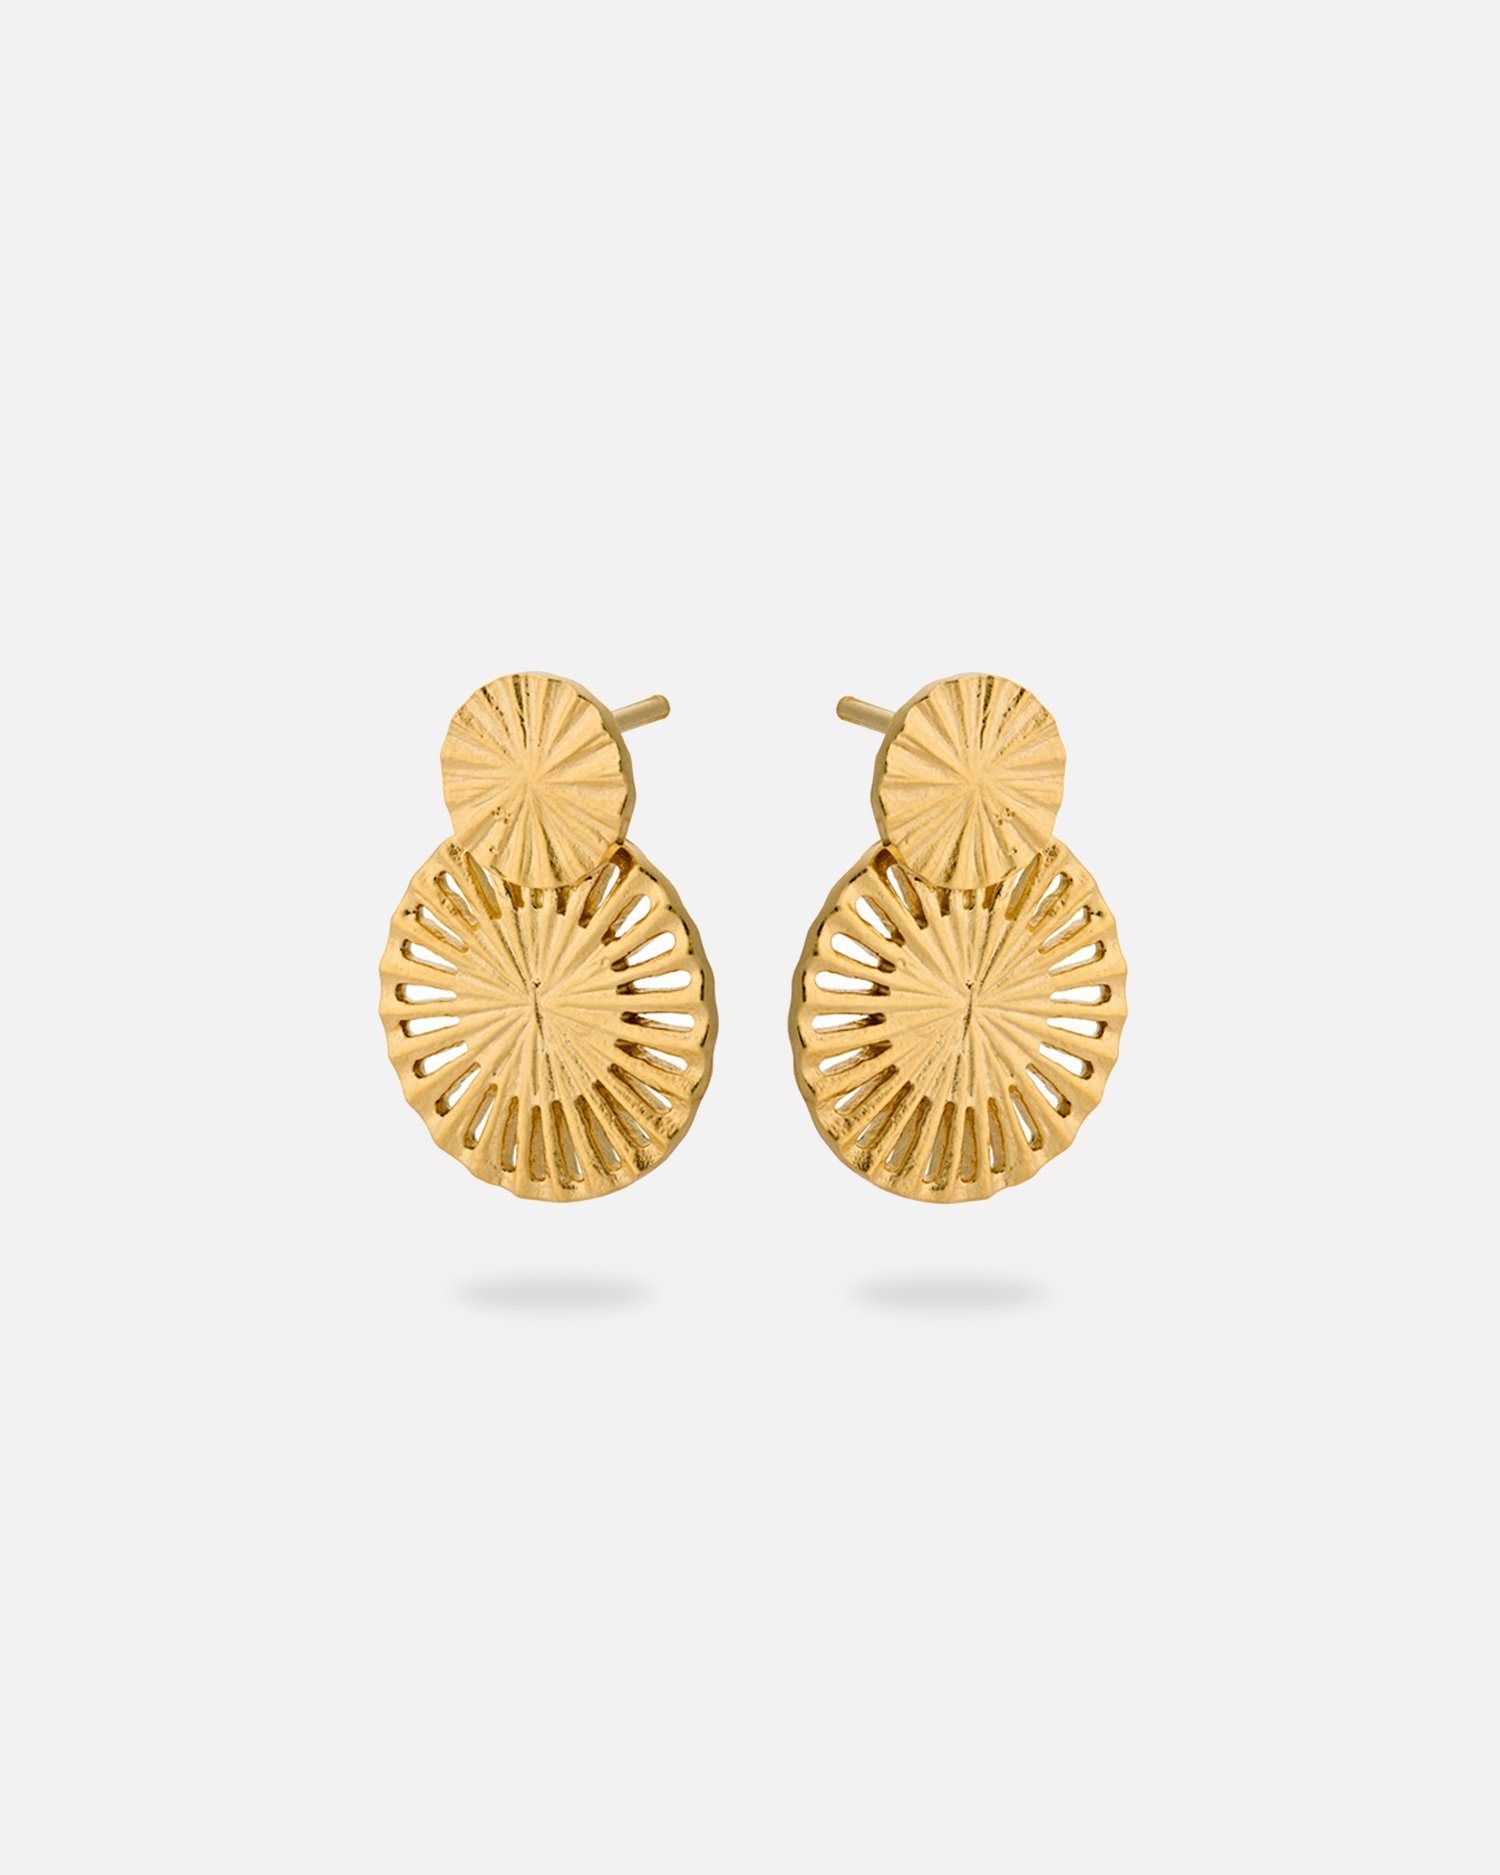 Pernille Corydon Paar Ohrstecker Small Starlight Ohrringe Damen 2 cm, Silber 925, 18 Karat vergoldet | Ohrstecker